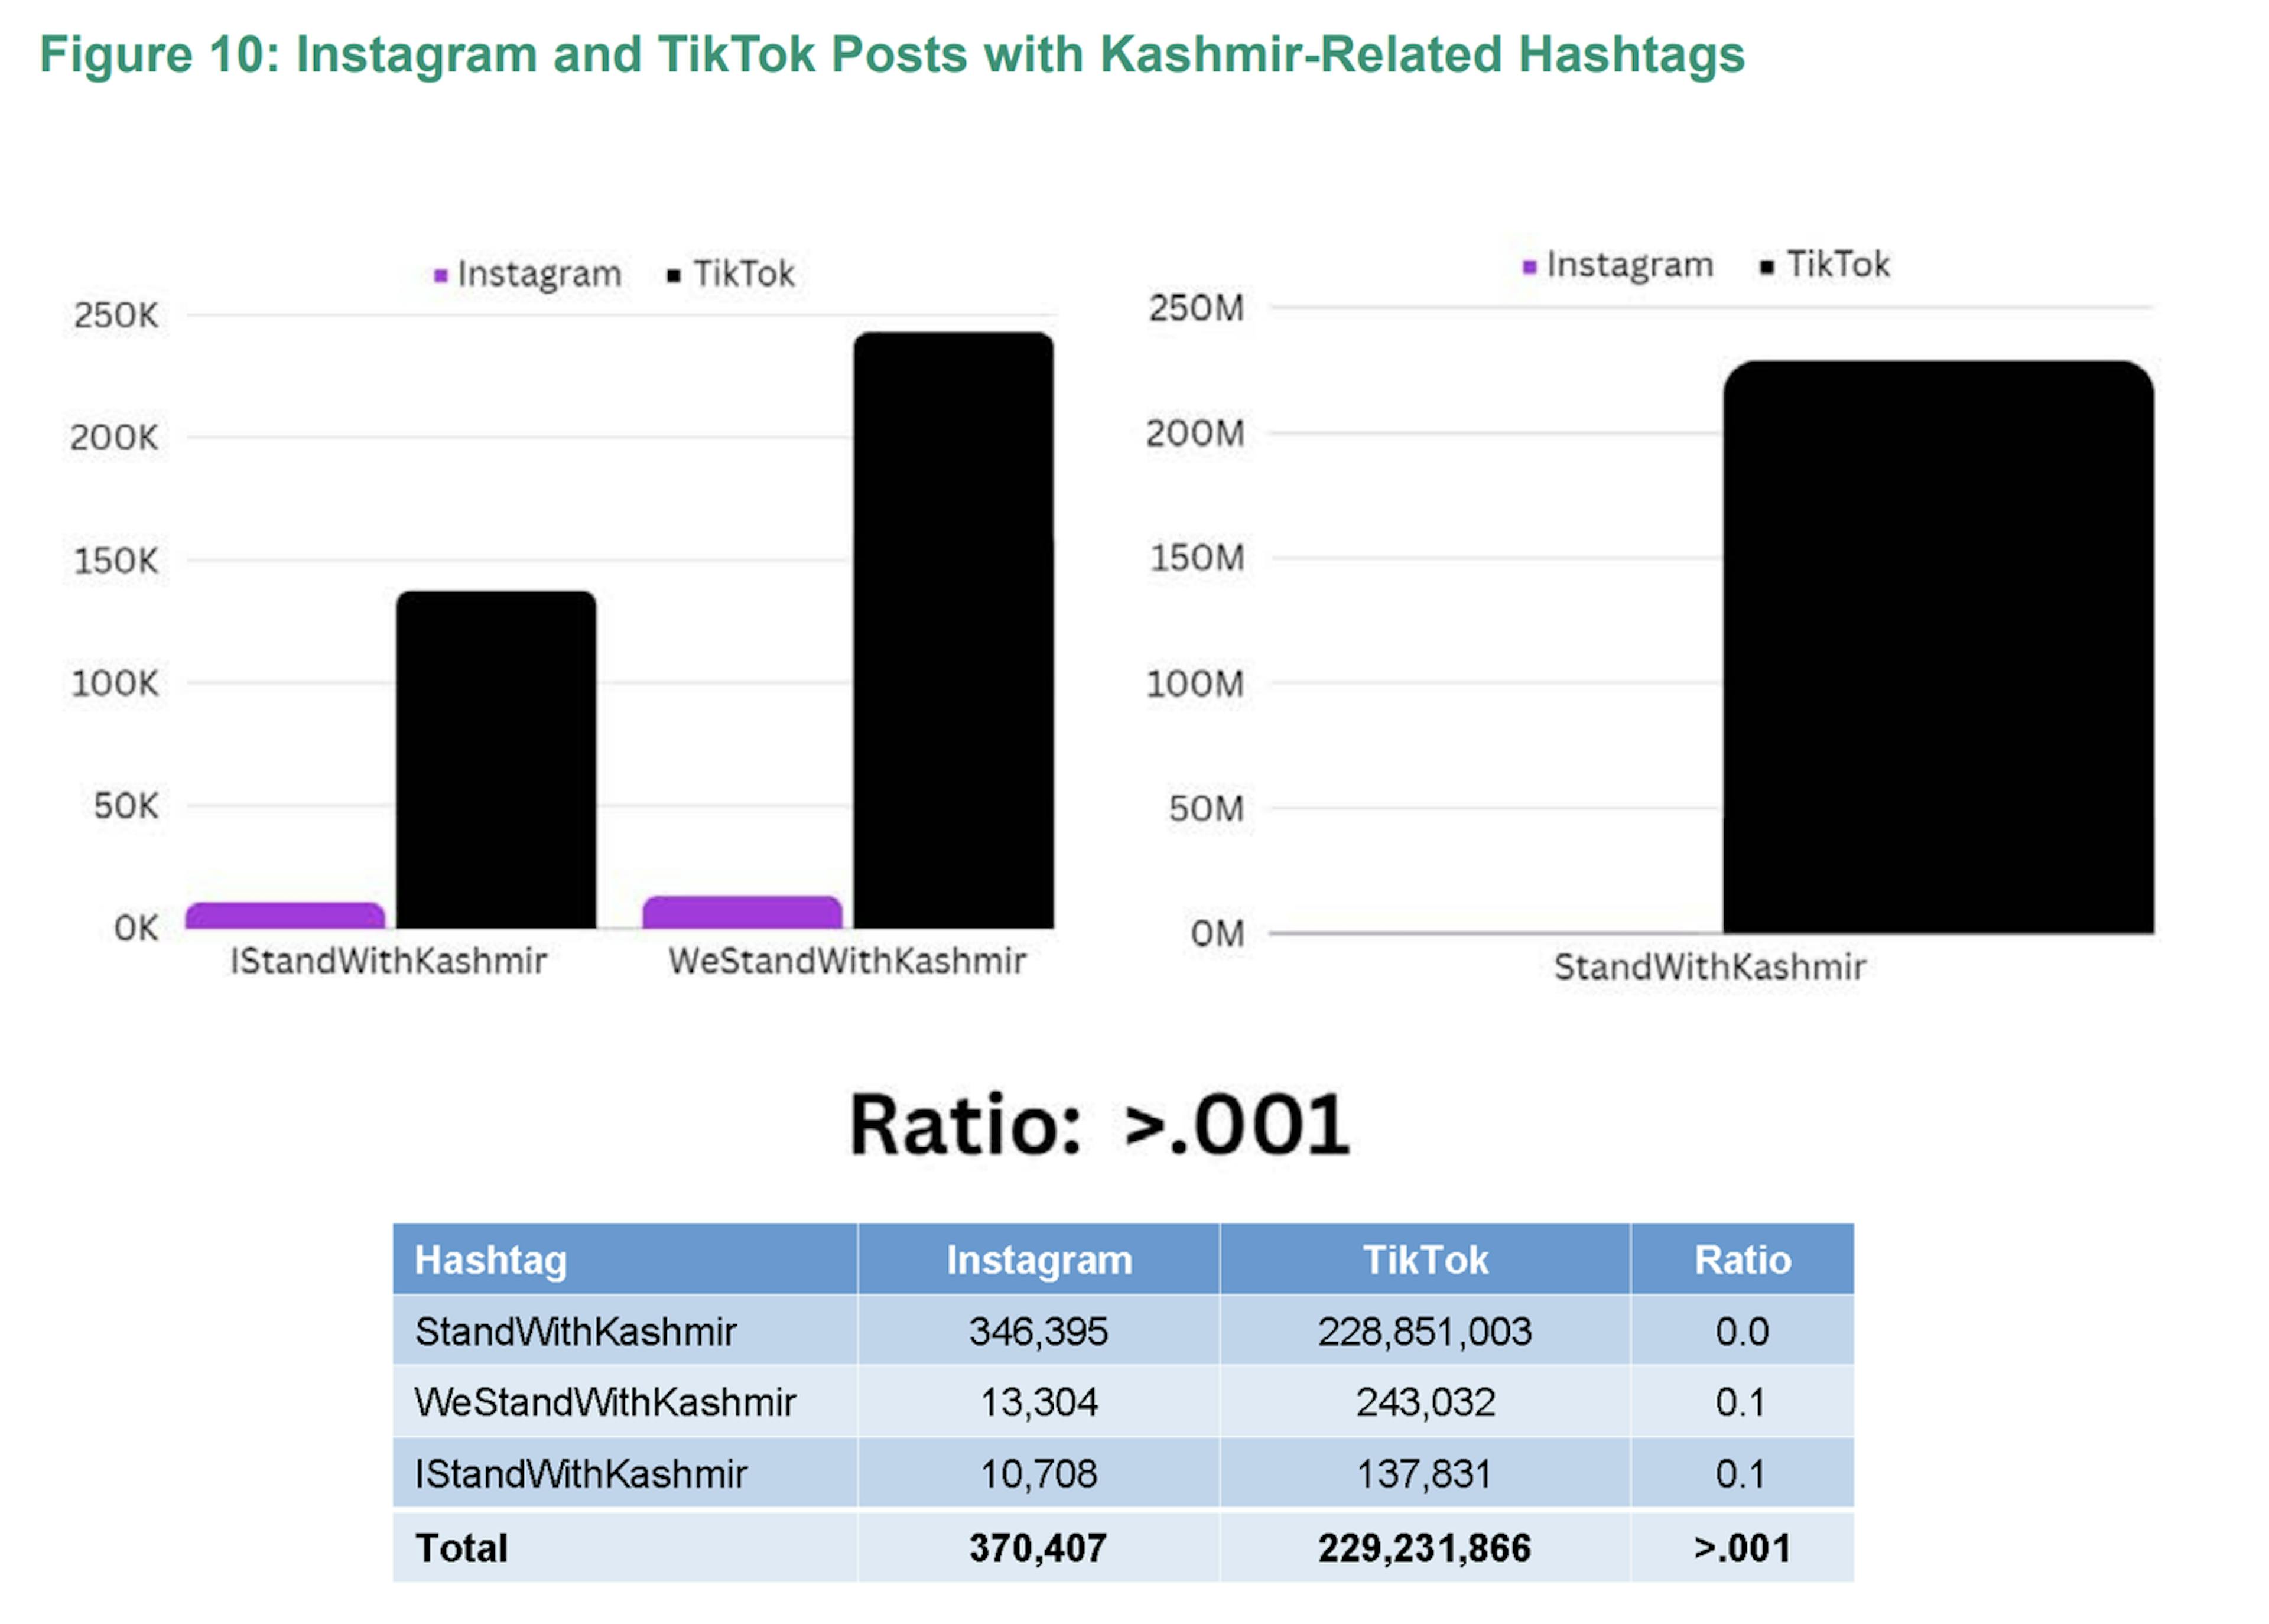 O número de postagens com hashtags relacionadas à Caxemira é consideravelmente maior no TikTok, sendo o número no TikTok 600 vezes maior do que o número no Instagram.